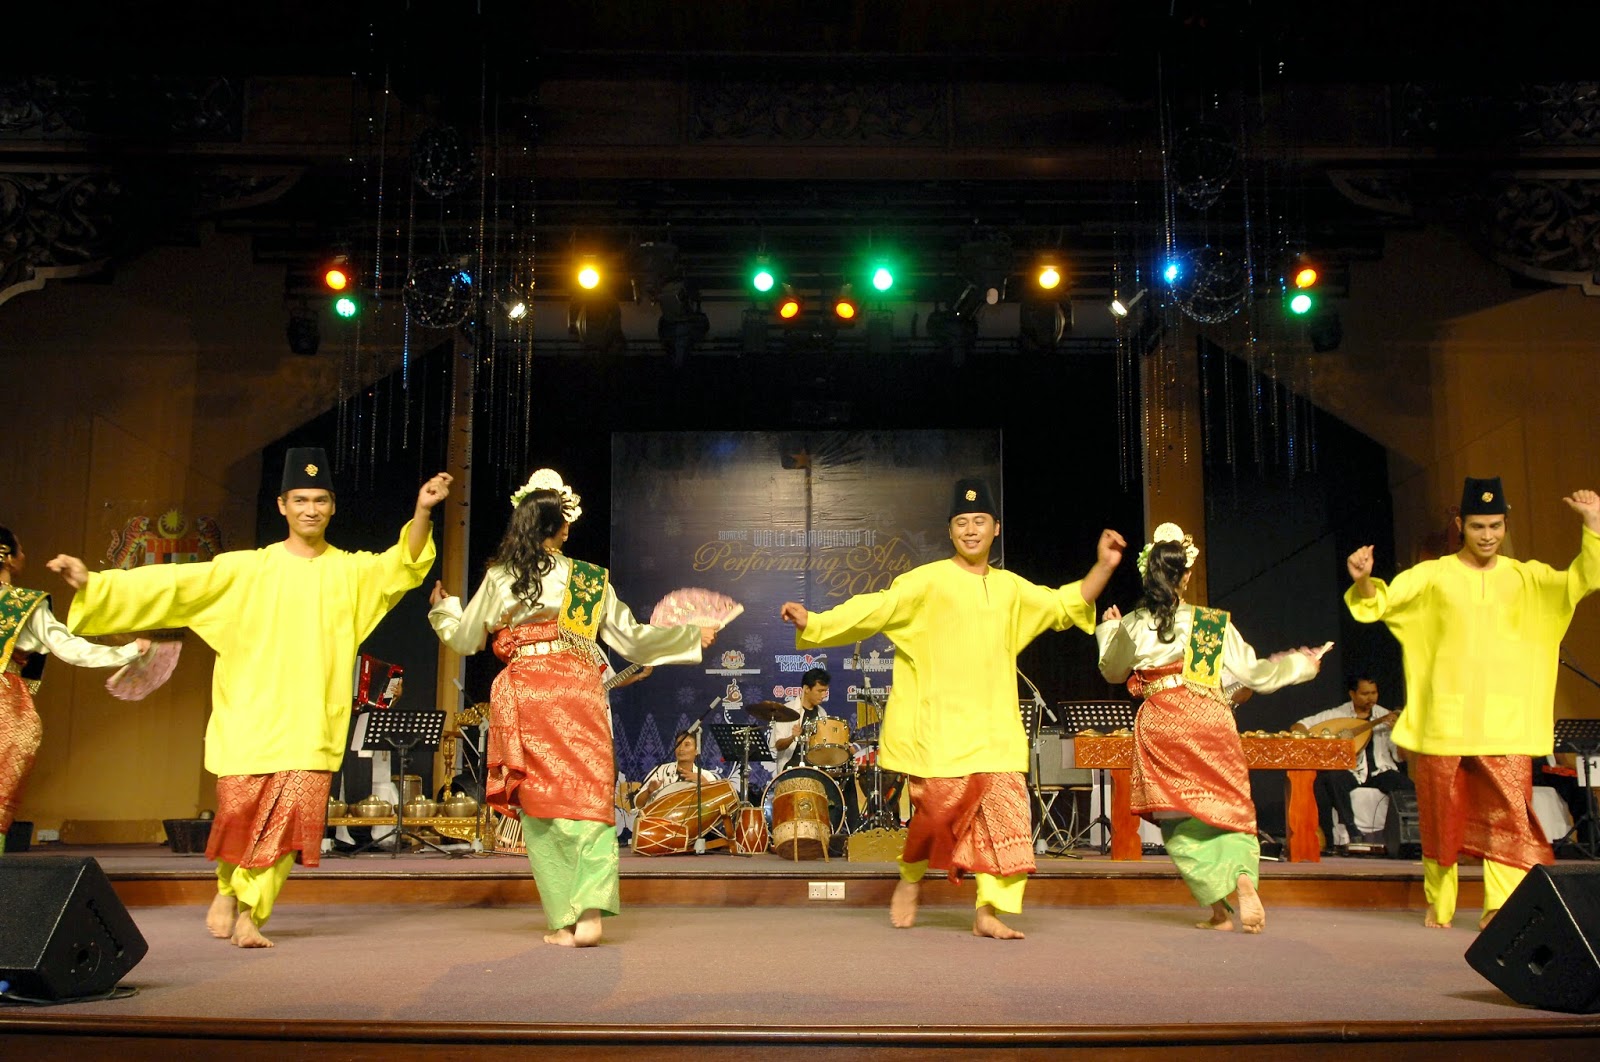 Persembahan Tarian Kebudayaan Colour Of Negeri Sembilan Portal Rasmi Majlis Bandaraya Seremban Mbs